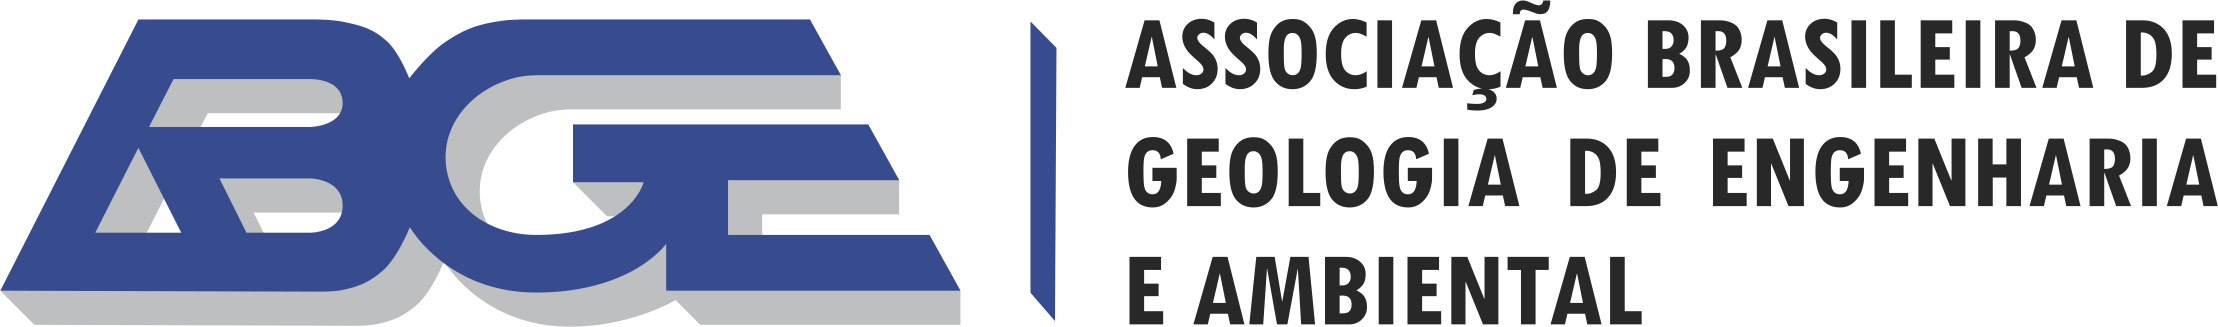 Associação Brasileira de Geologia de Engenharia e Ambiental (ABGE)"